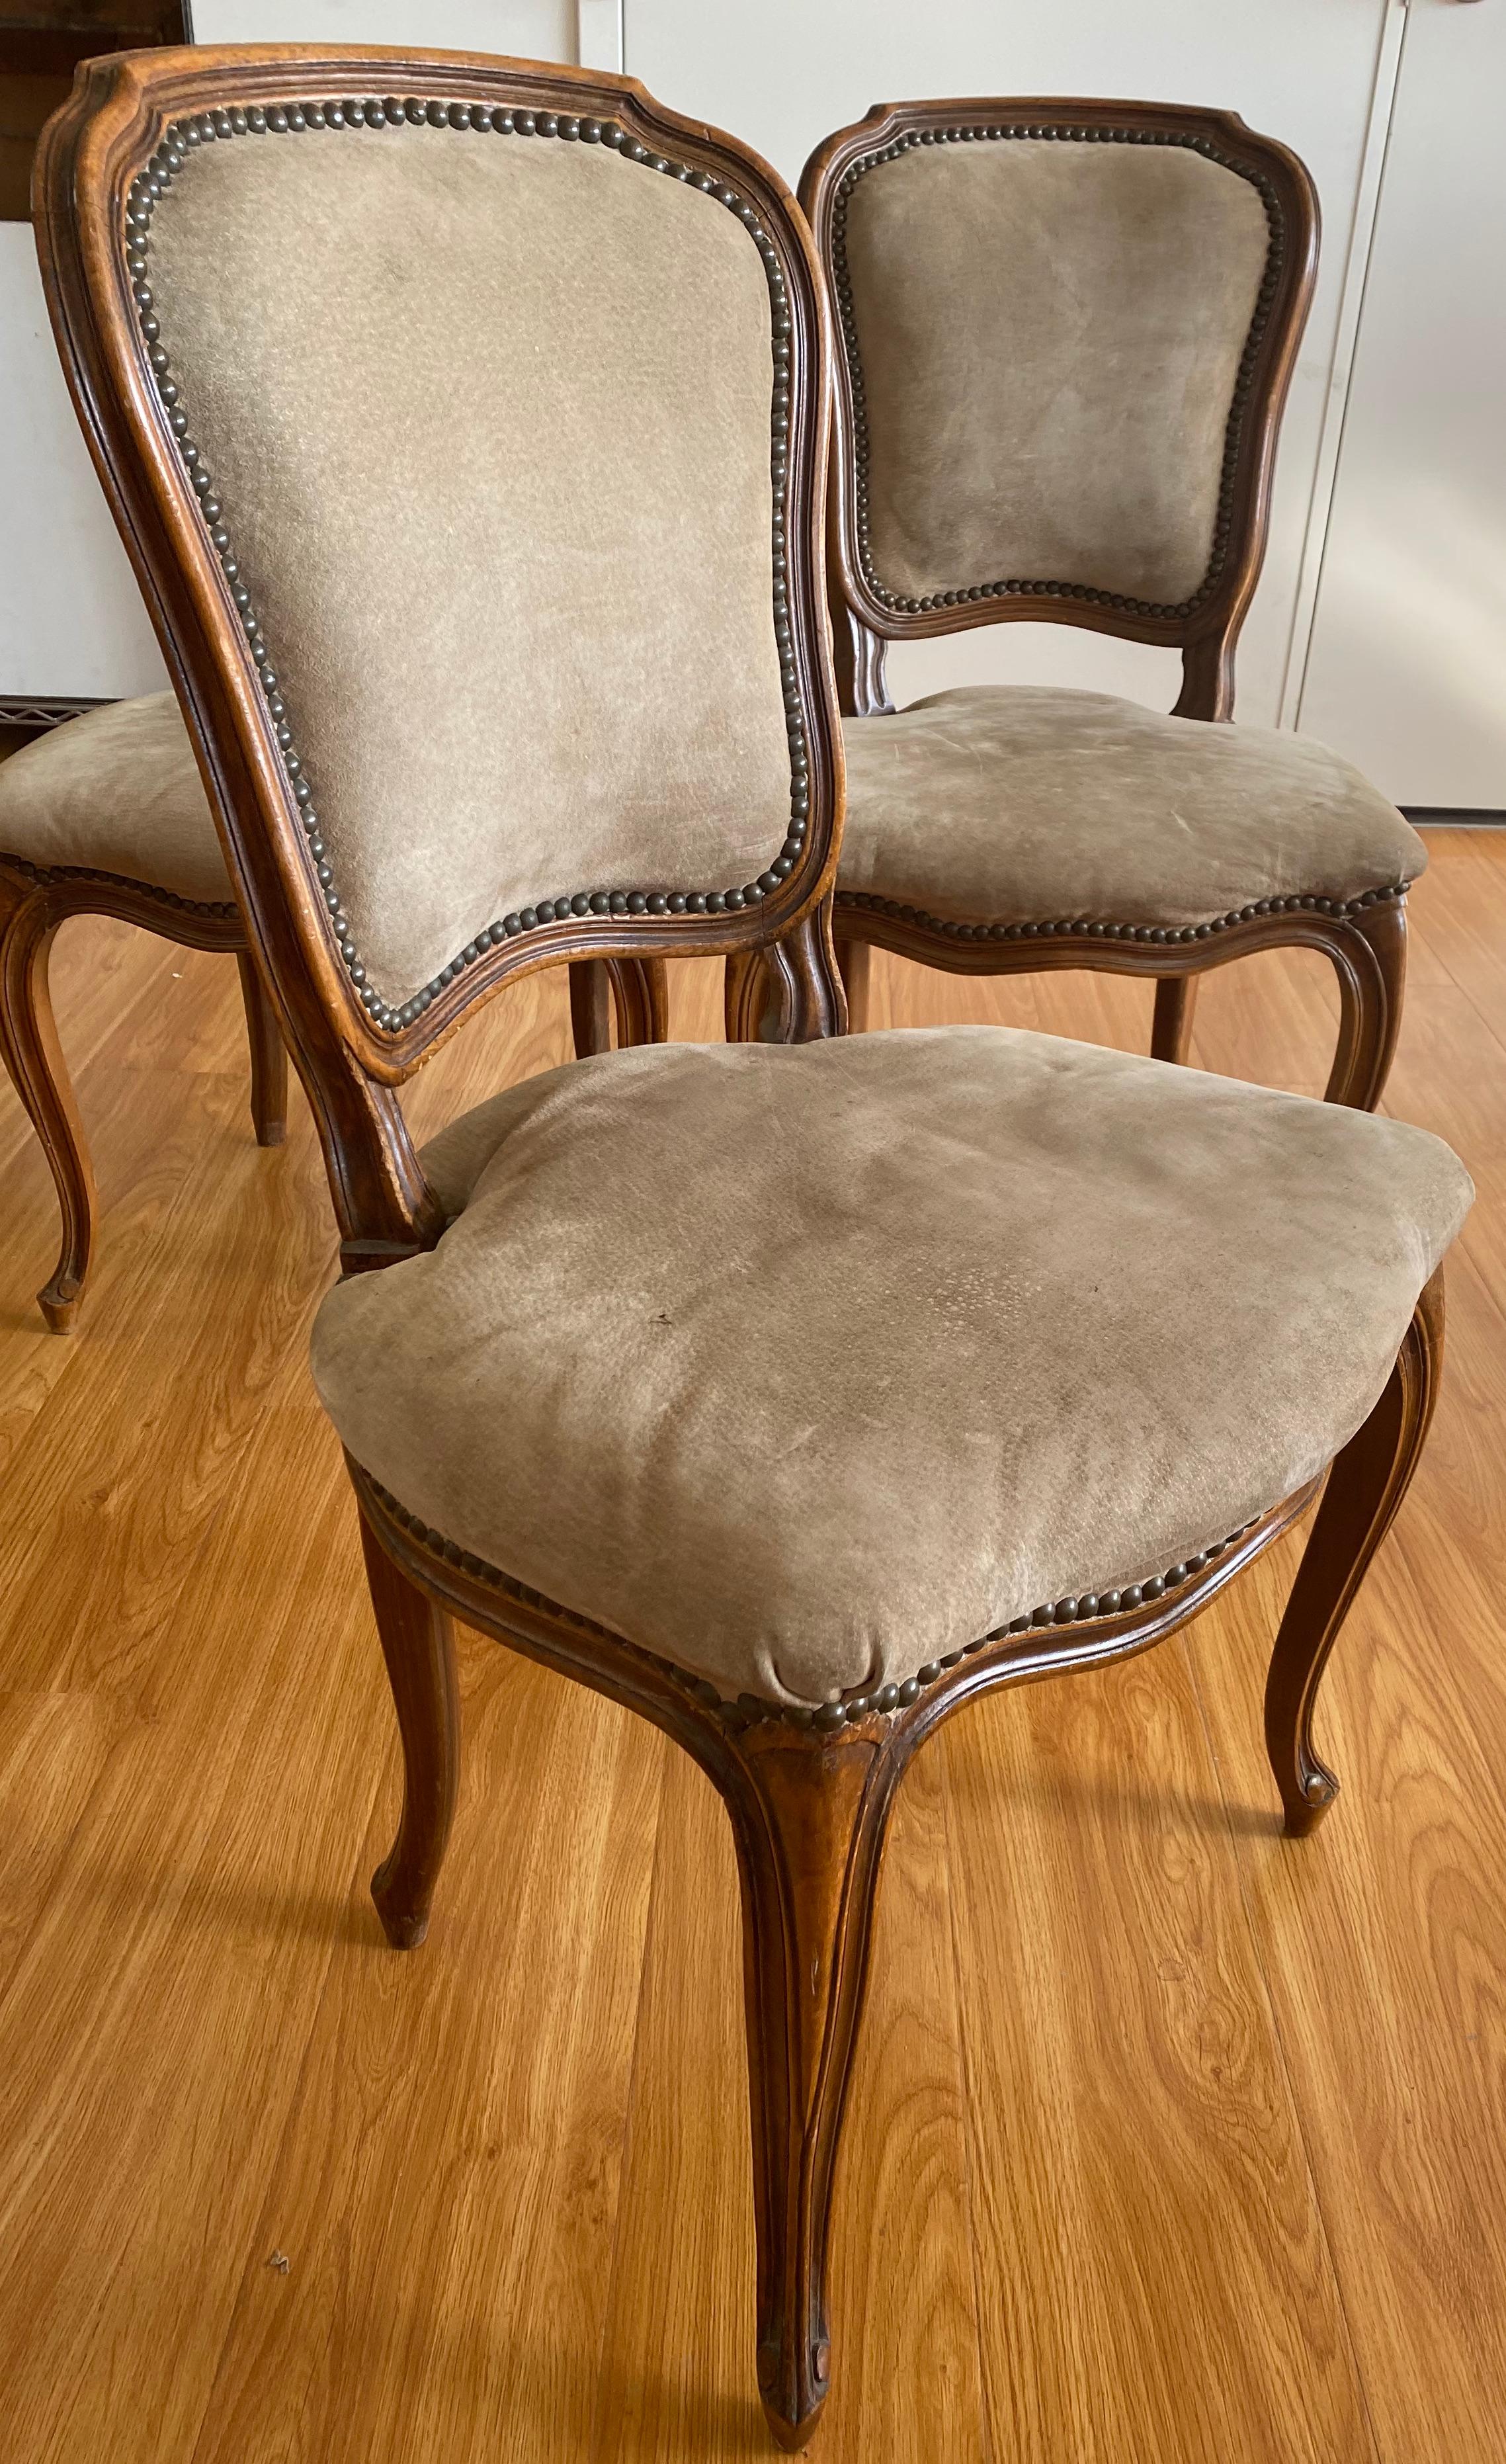 Trois chaises d'appoint en noyer sculpté du début du 20e siècle, vers 1900
Chaises d'appoint classiques en noyer français. Chaque chaise est sculptée dans du noyer massif. Les chaises sont actuellement recouvertes d'un revêtement de type daim avec